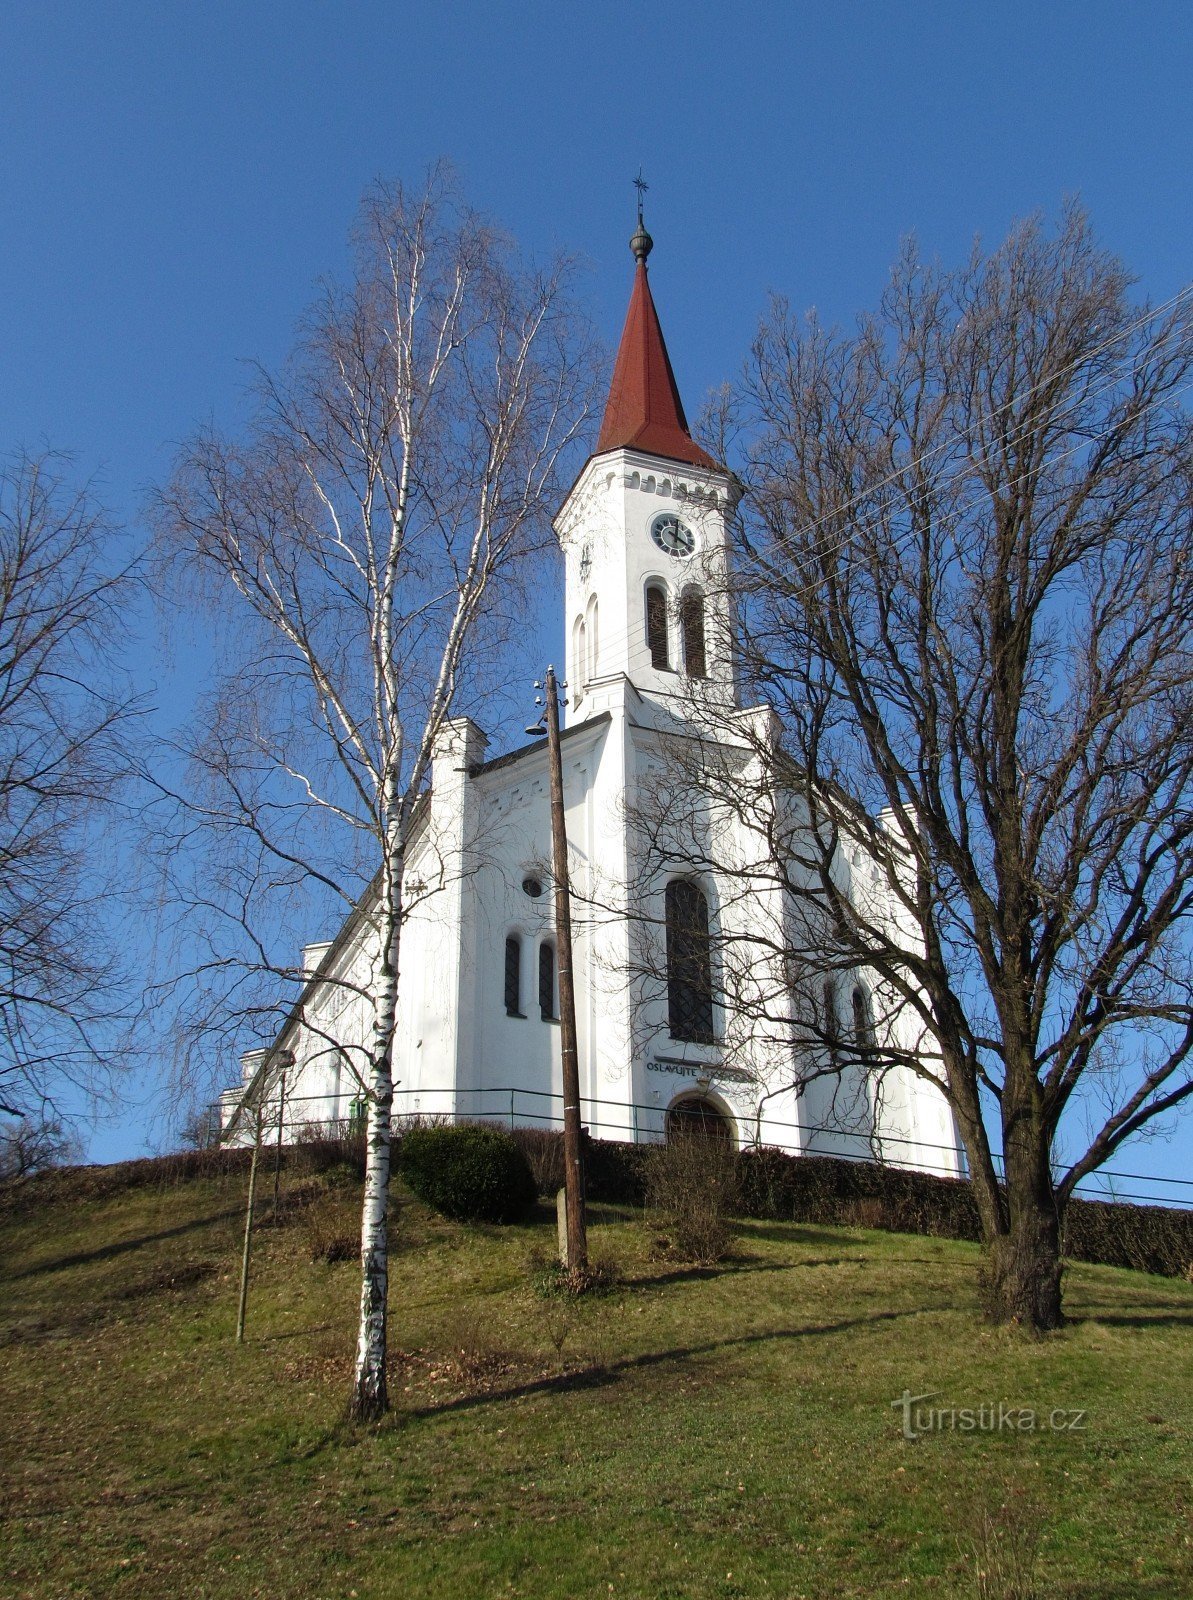 Zádveřice-Raková - igreja evangélica